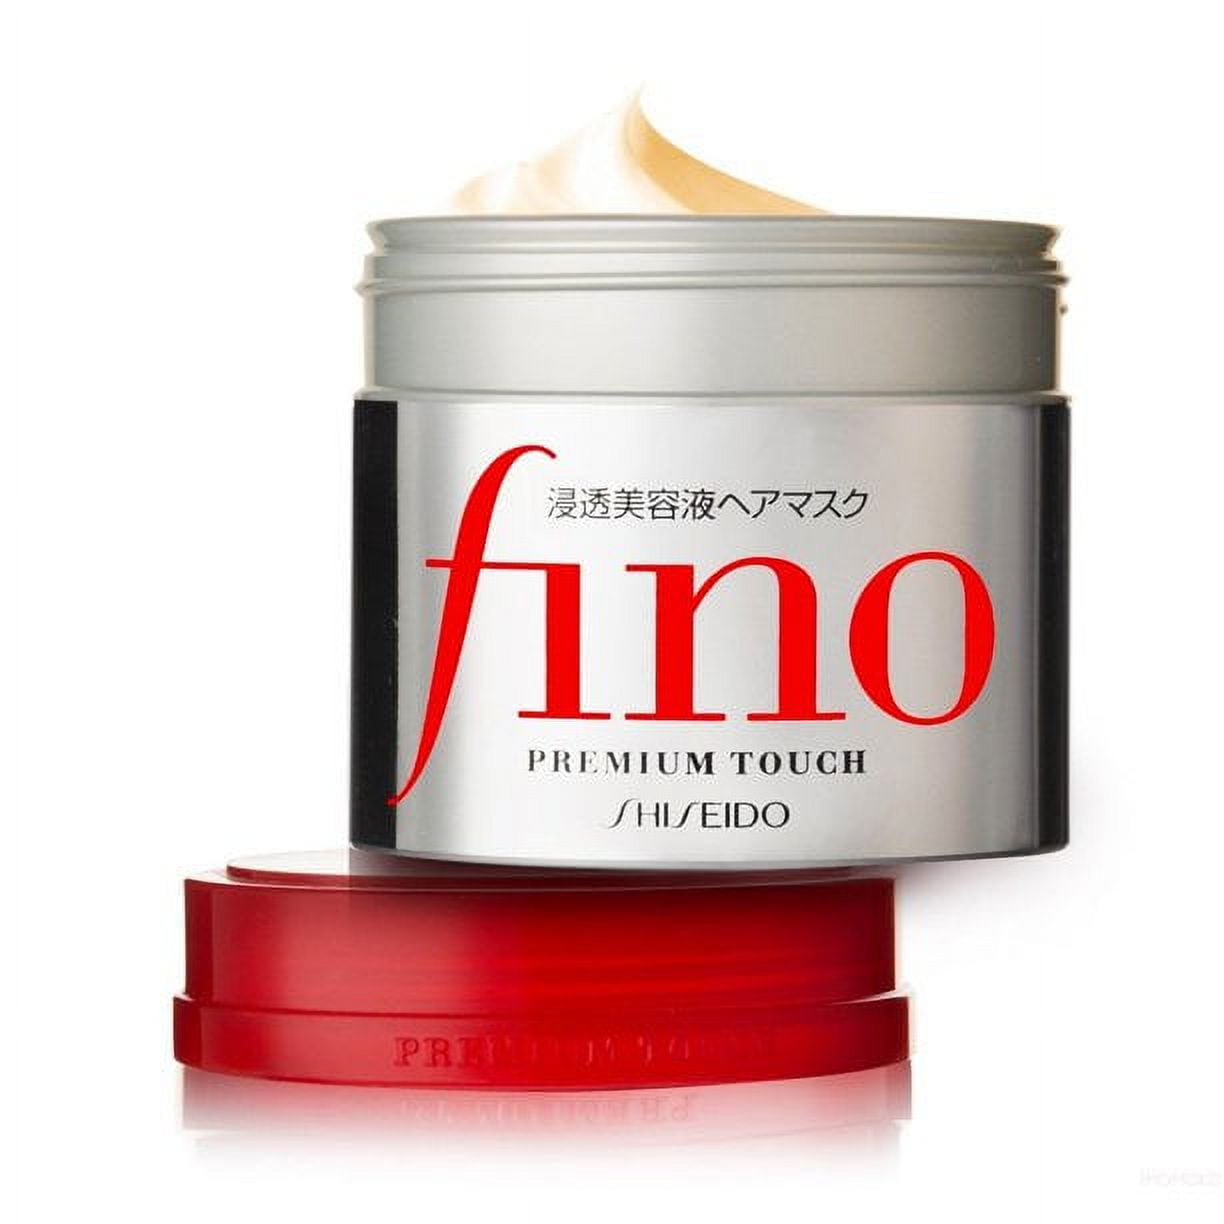 Shisedio Fino Premium Touch Hair Mask (Size : 8.1 oz) 